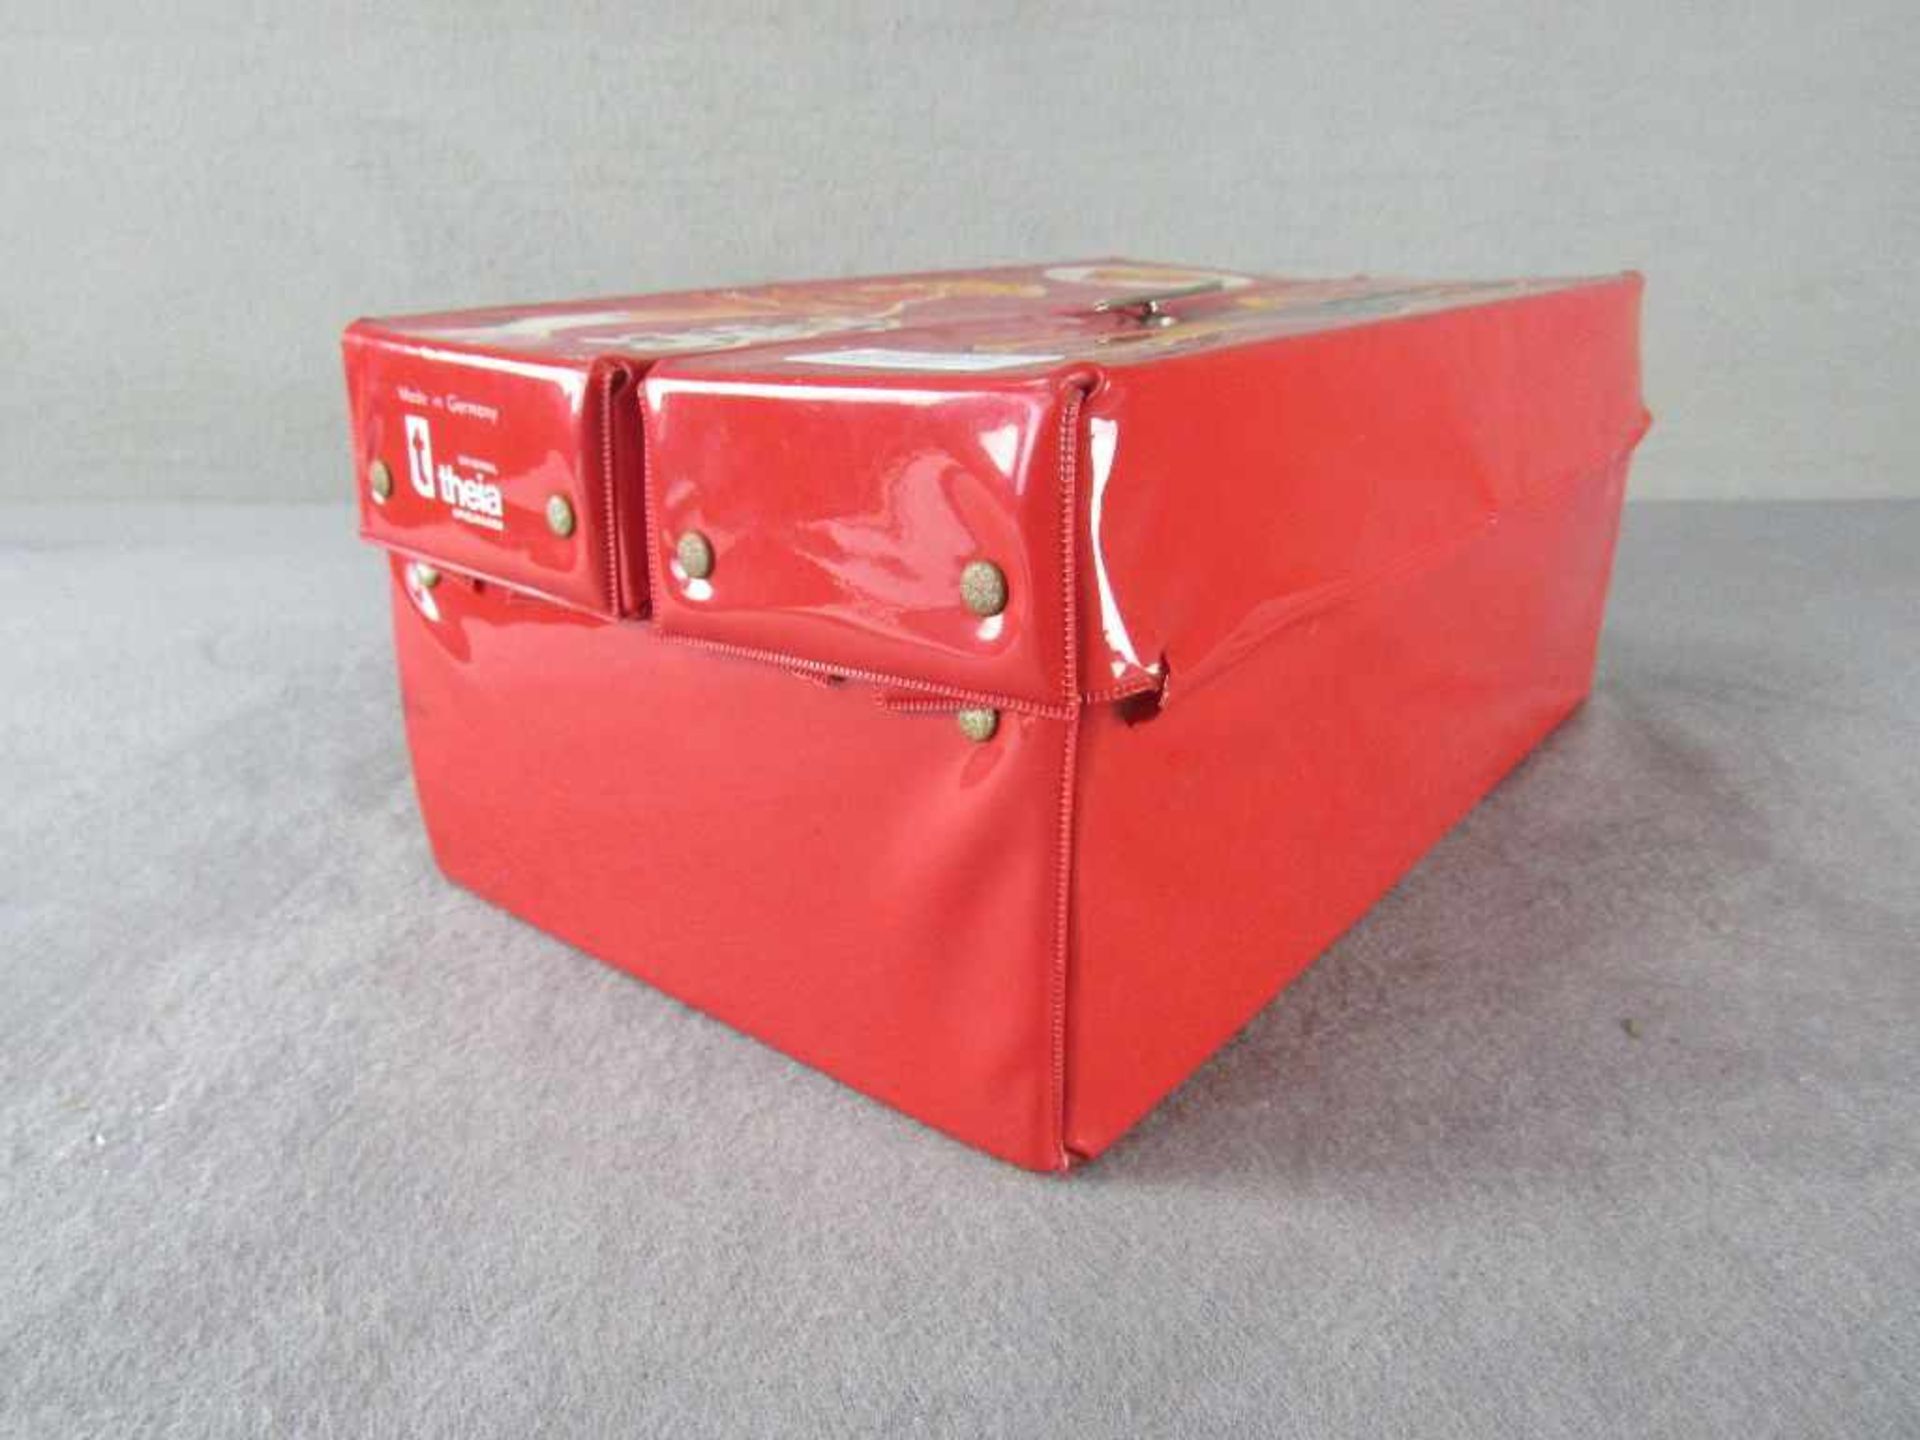 Barbipuppe in original Koffer mit viel Zubehör wohl 70er Jahre< - Image 2 of 3